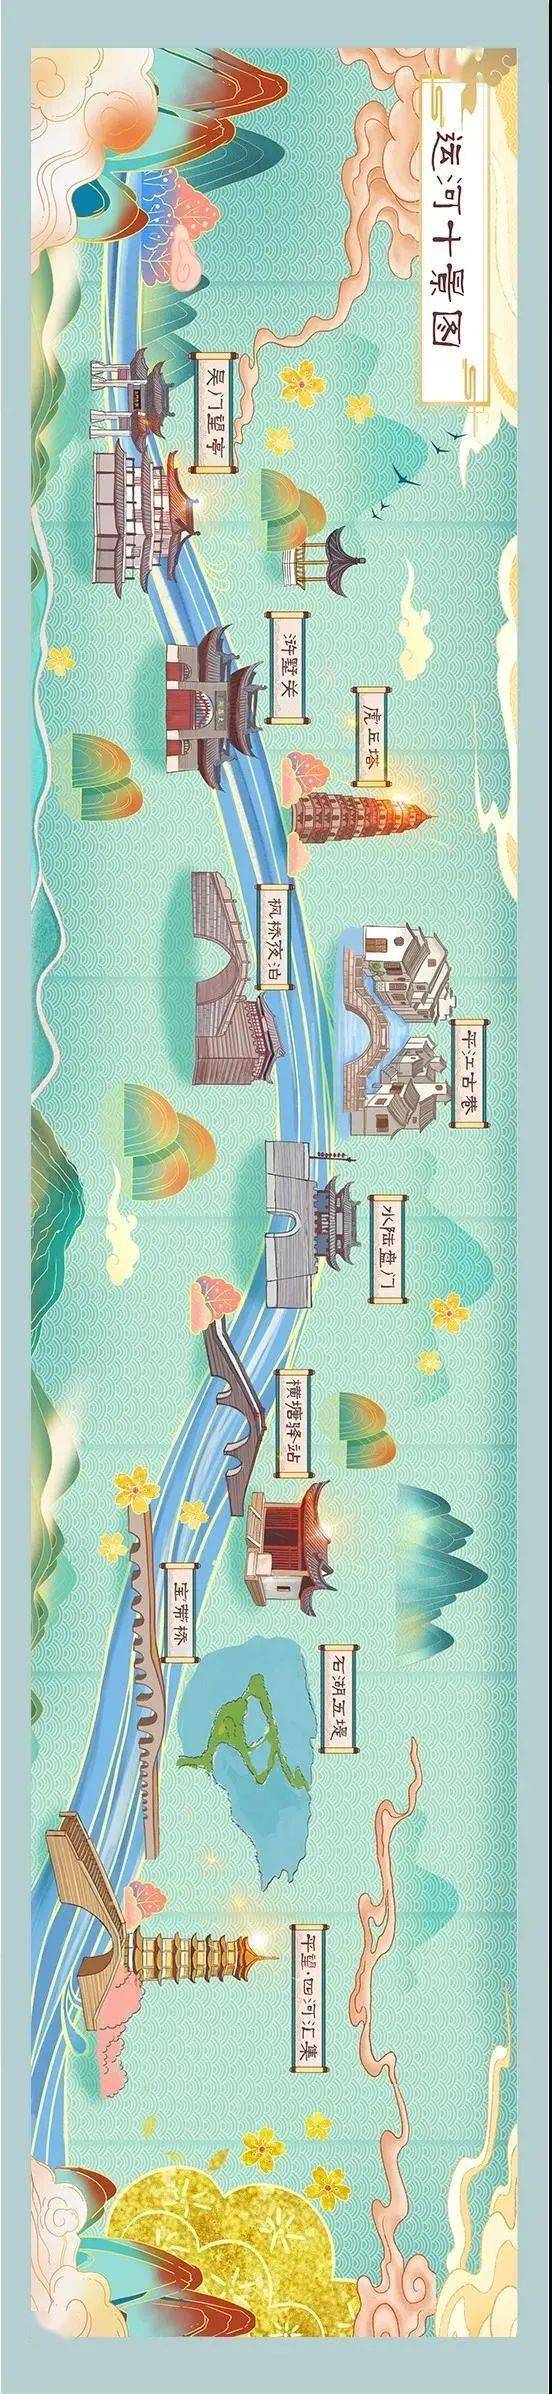 苏州运河十景地图图片